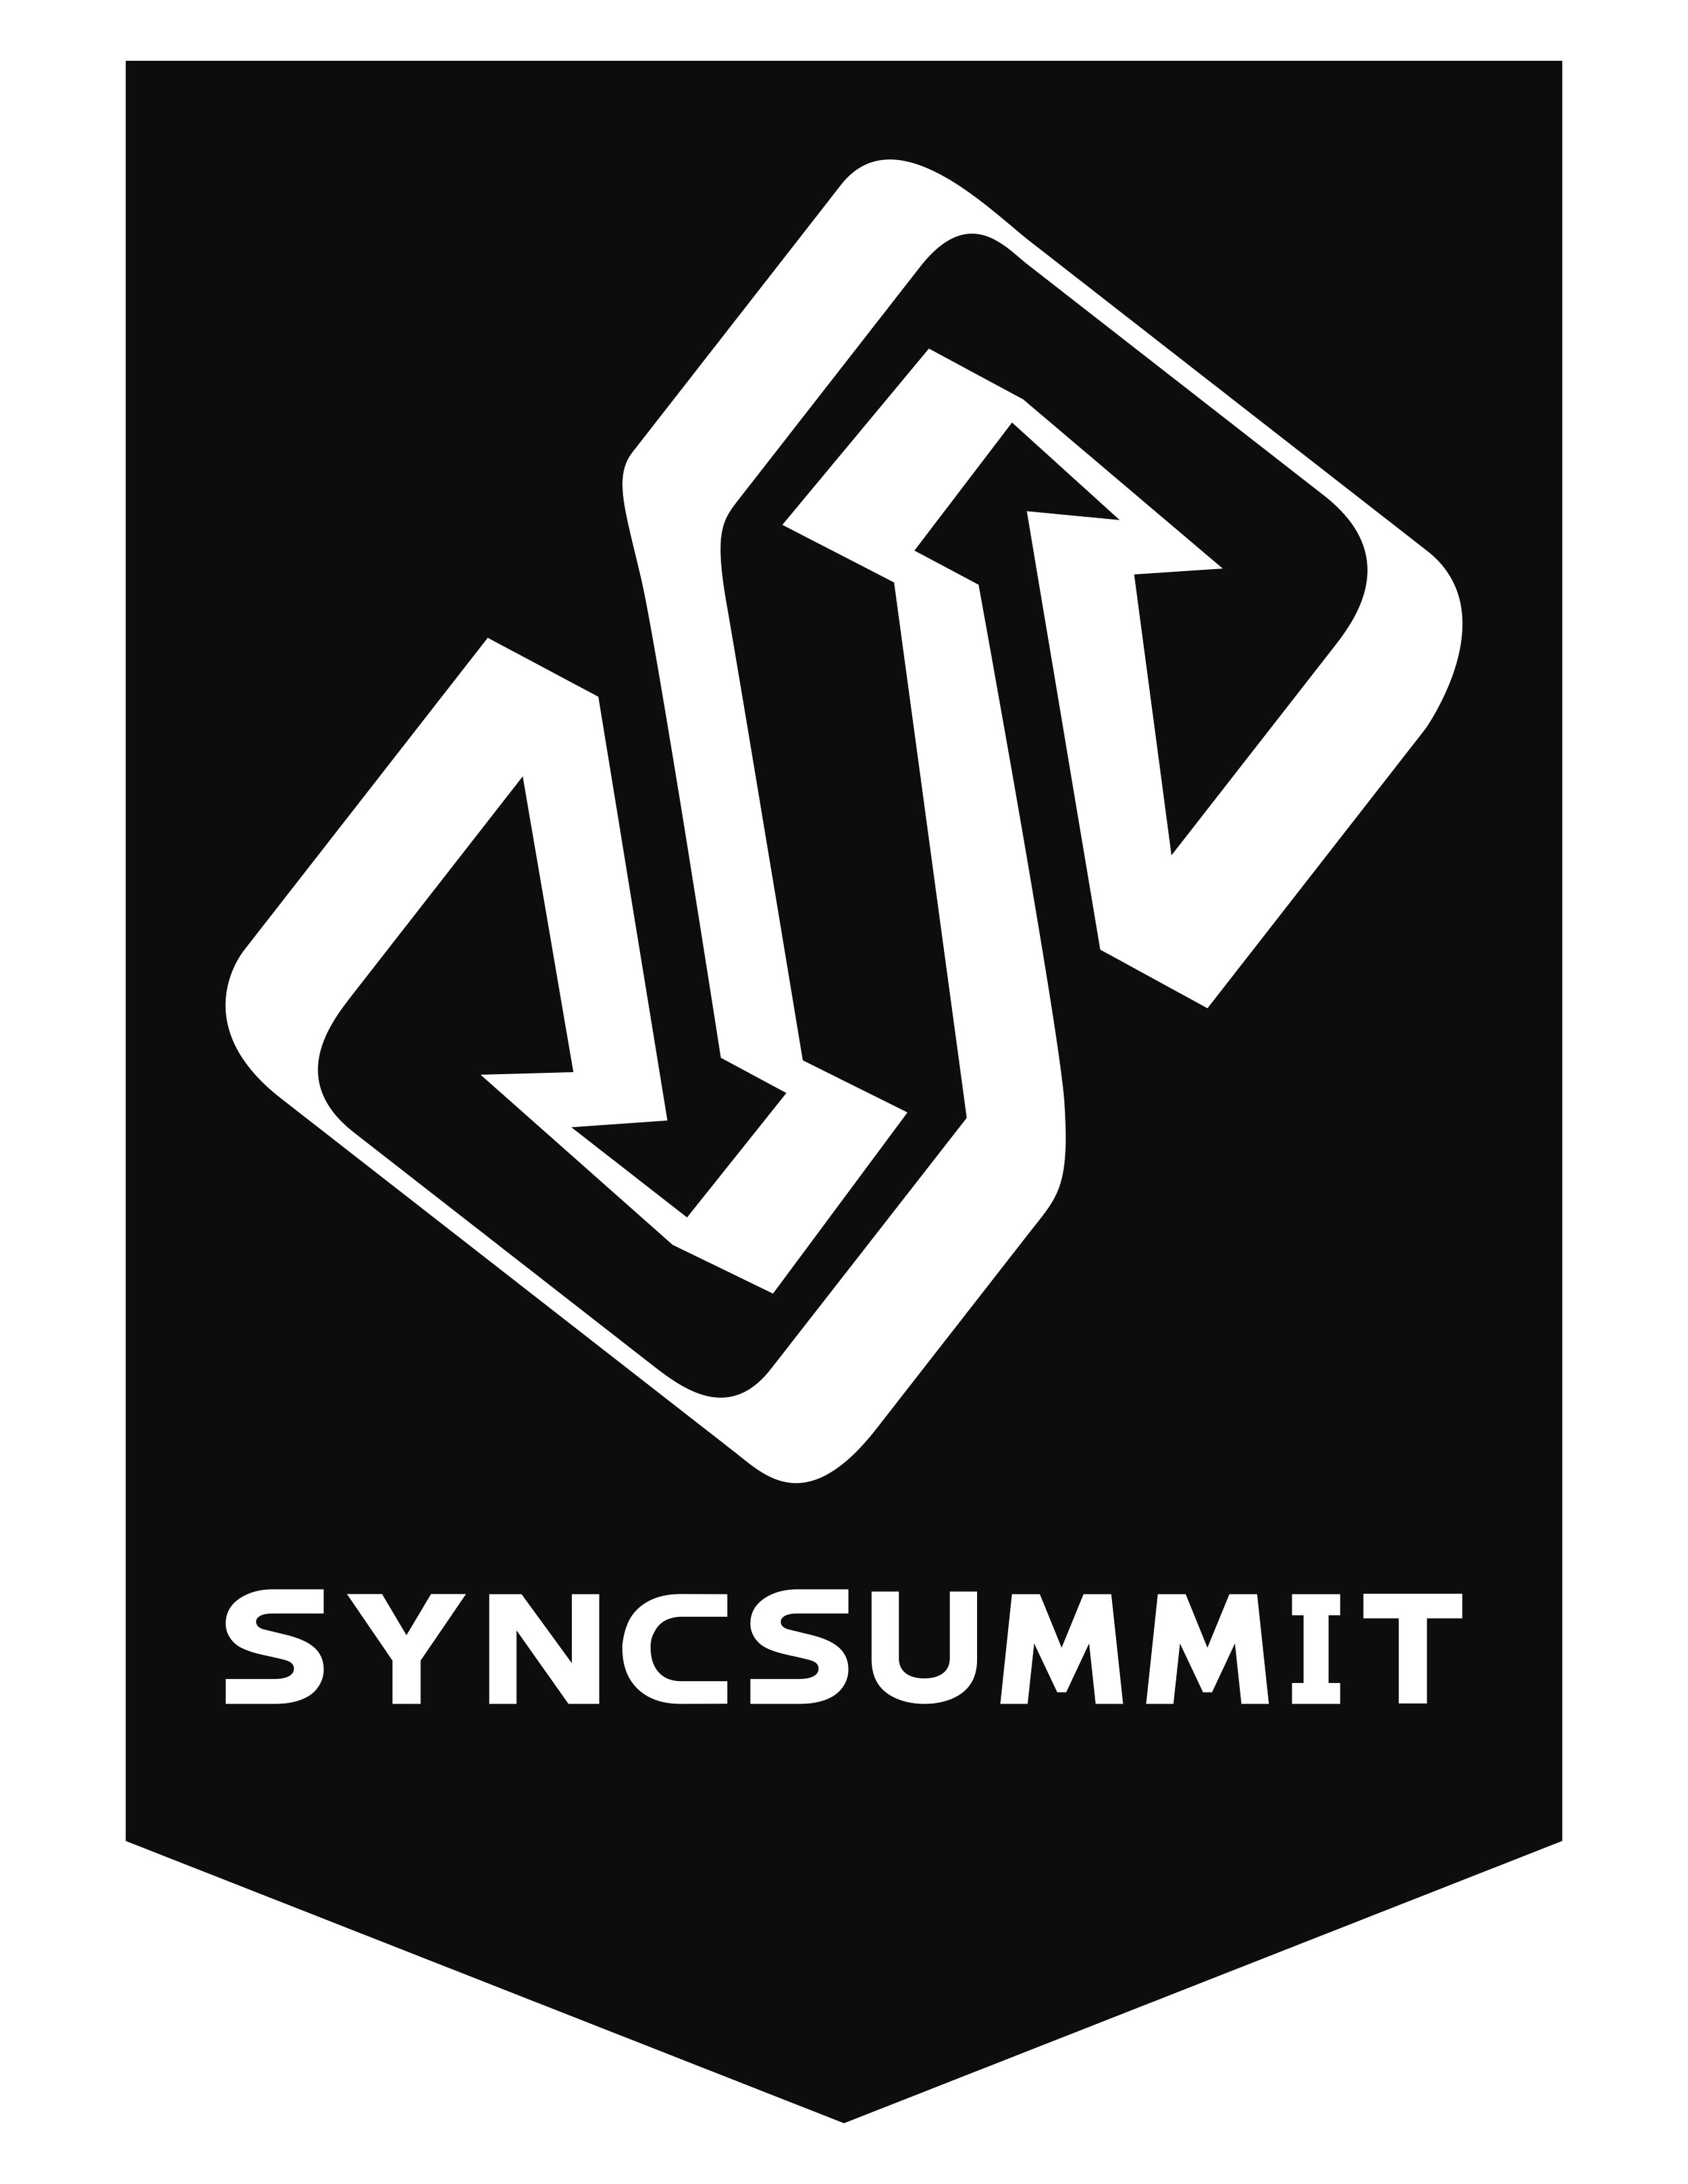 sync-summit-logobw - Mark Frieser.jpeg